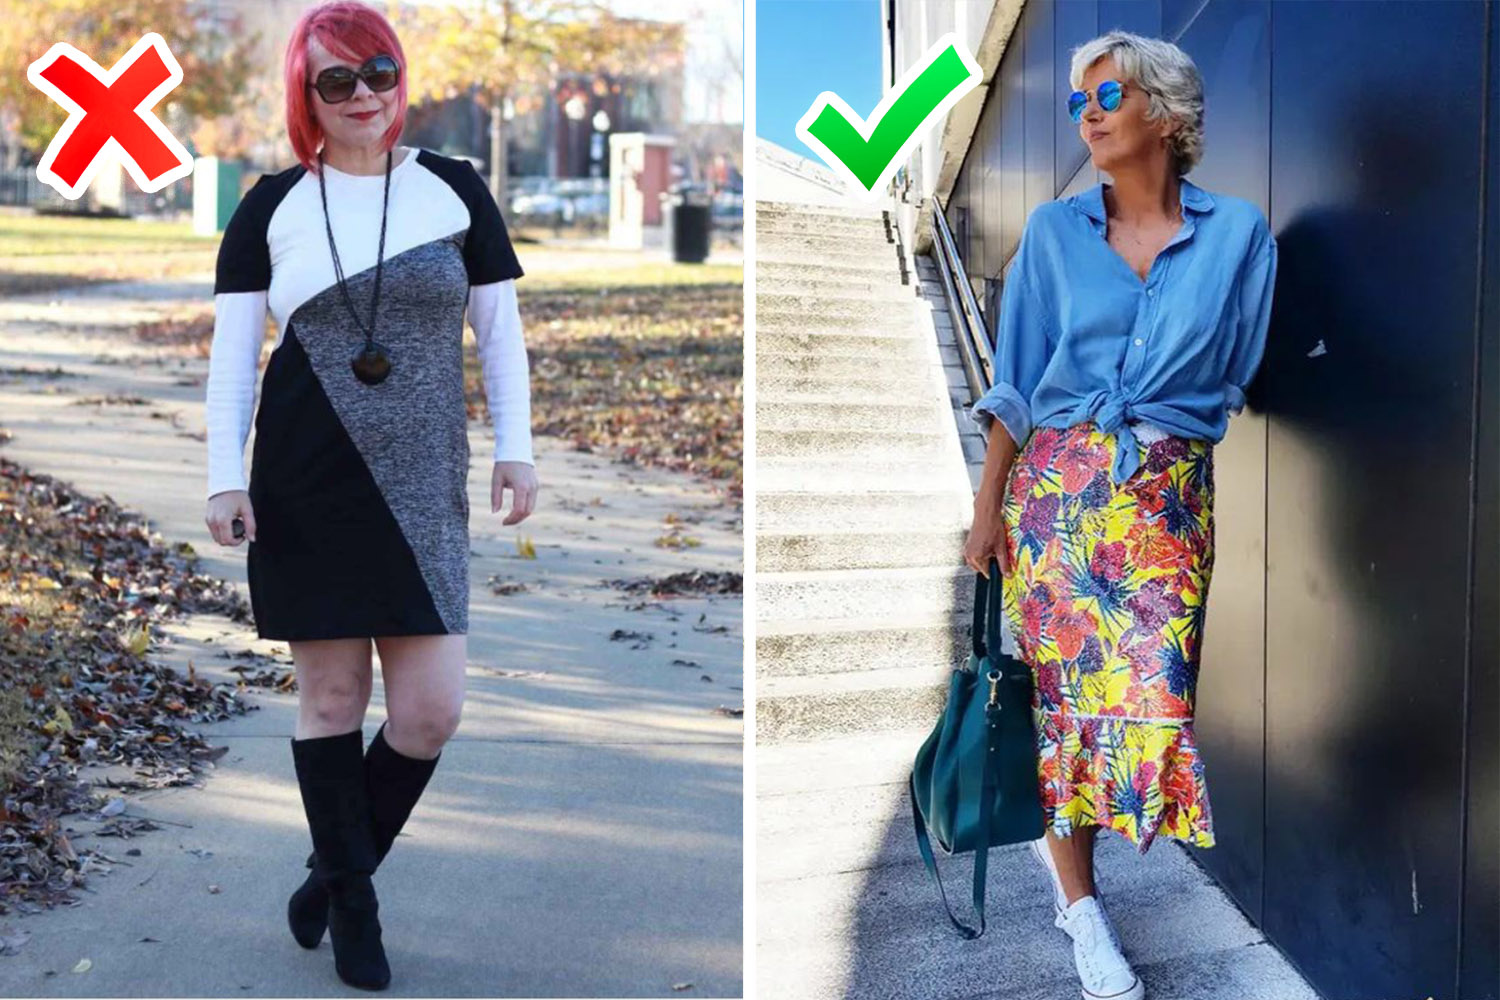 Невооруженным глазом видно, как украсили цвета в одежде женщину на фото справа, и как лихо черные и серые оттенки состарили модель на фото слева